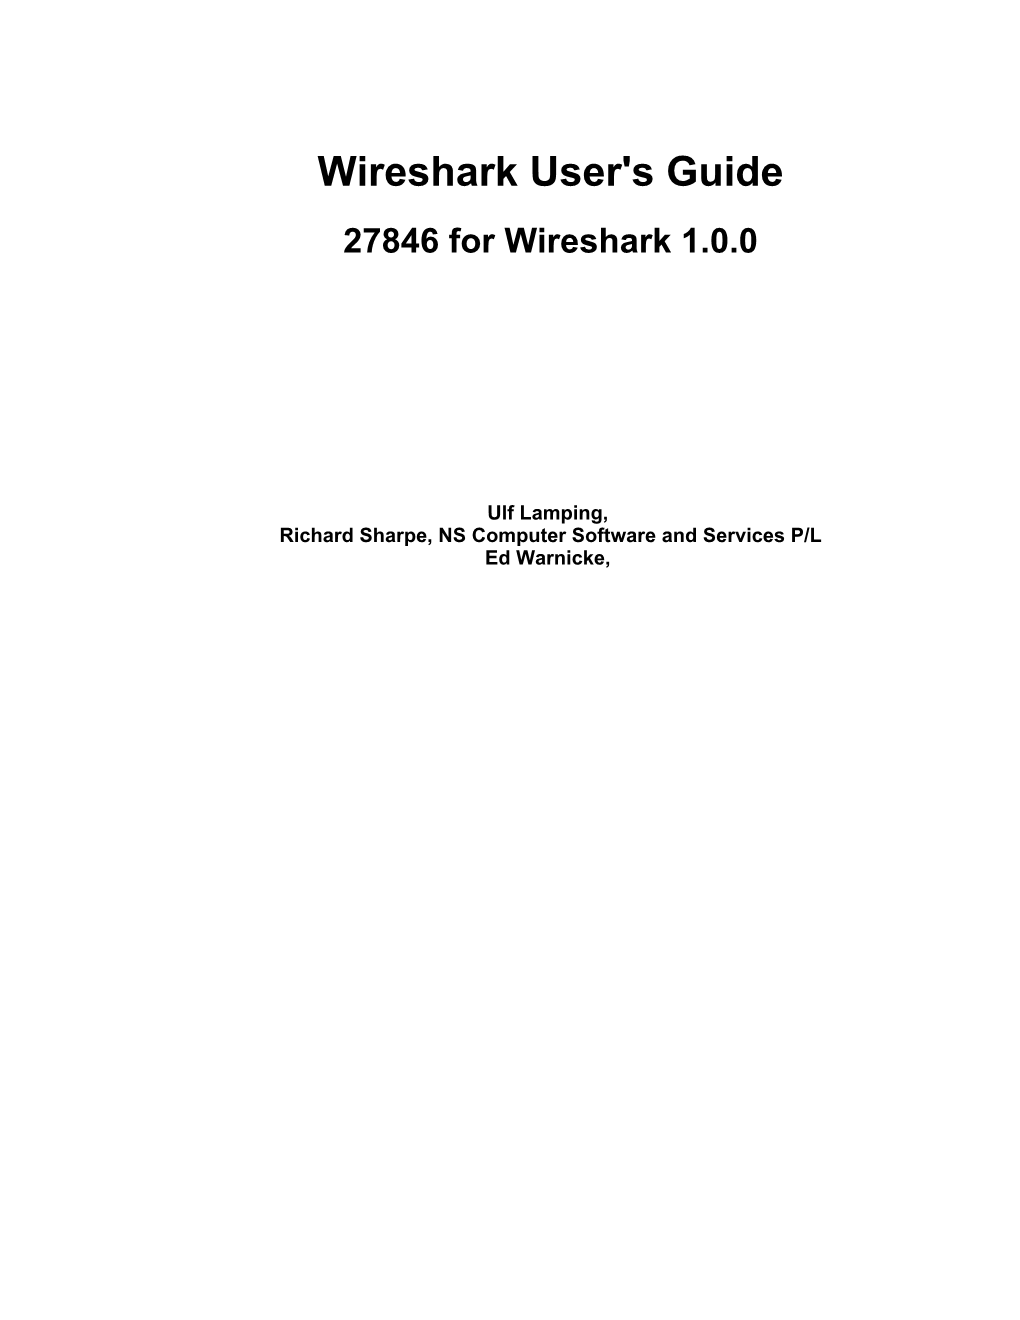 Wireshark User's Guide 27846 for Wireshark 1.0.0